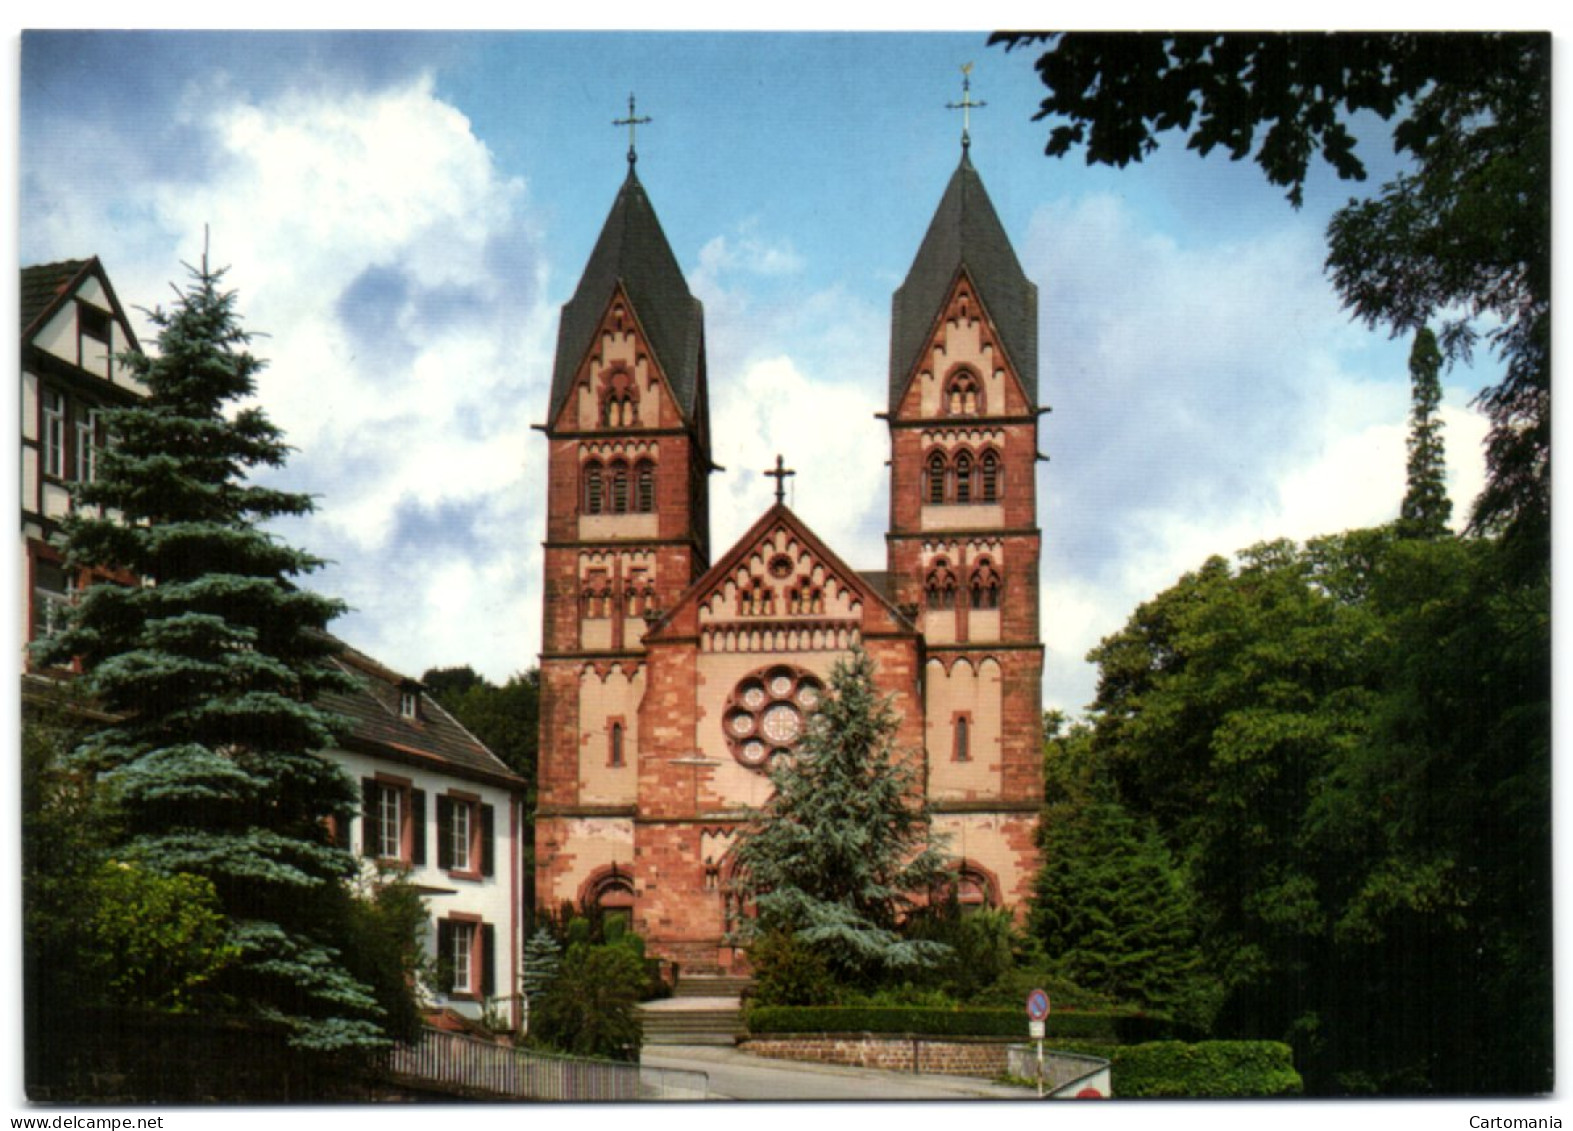 Mettlach - St. Ludwinus - Kreis Merzig-Wadern